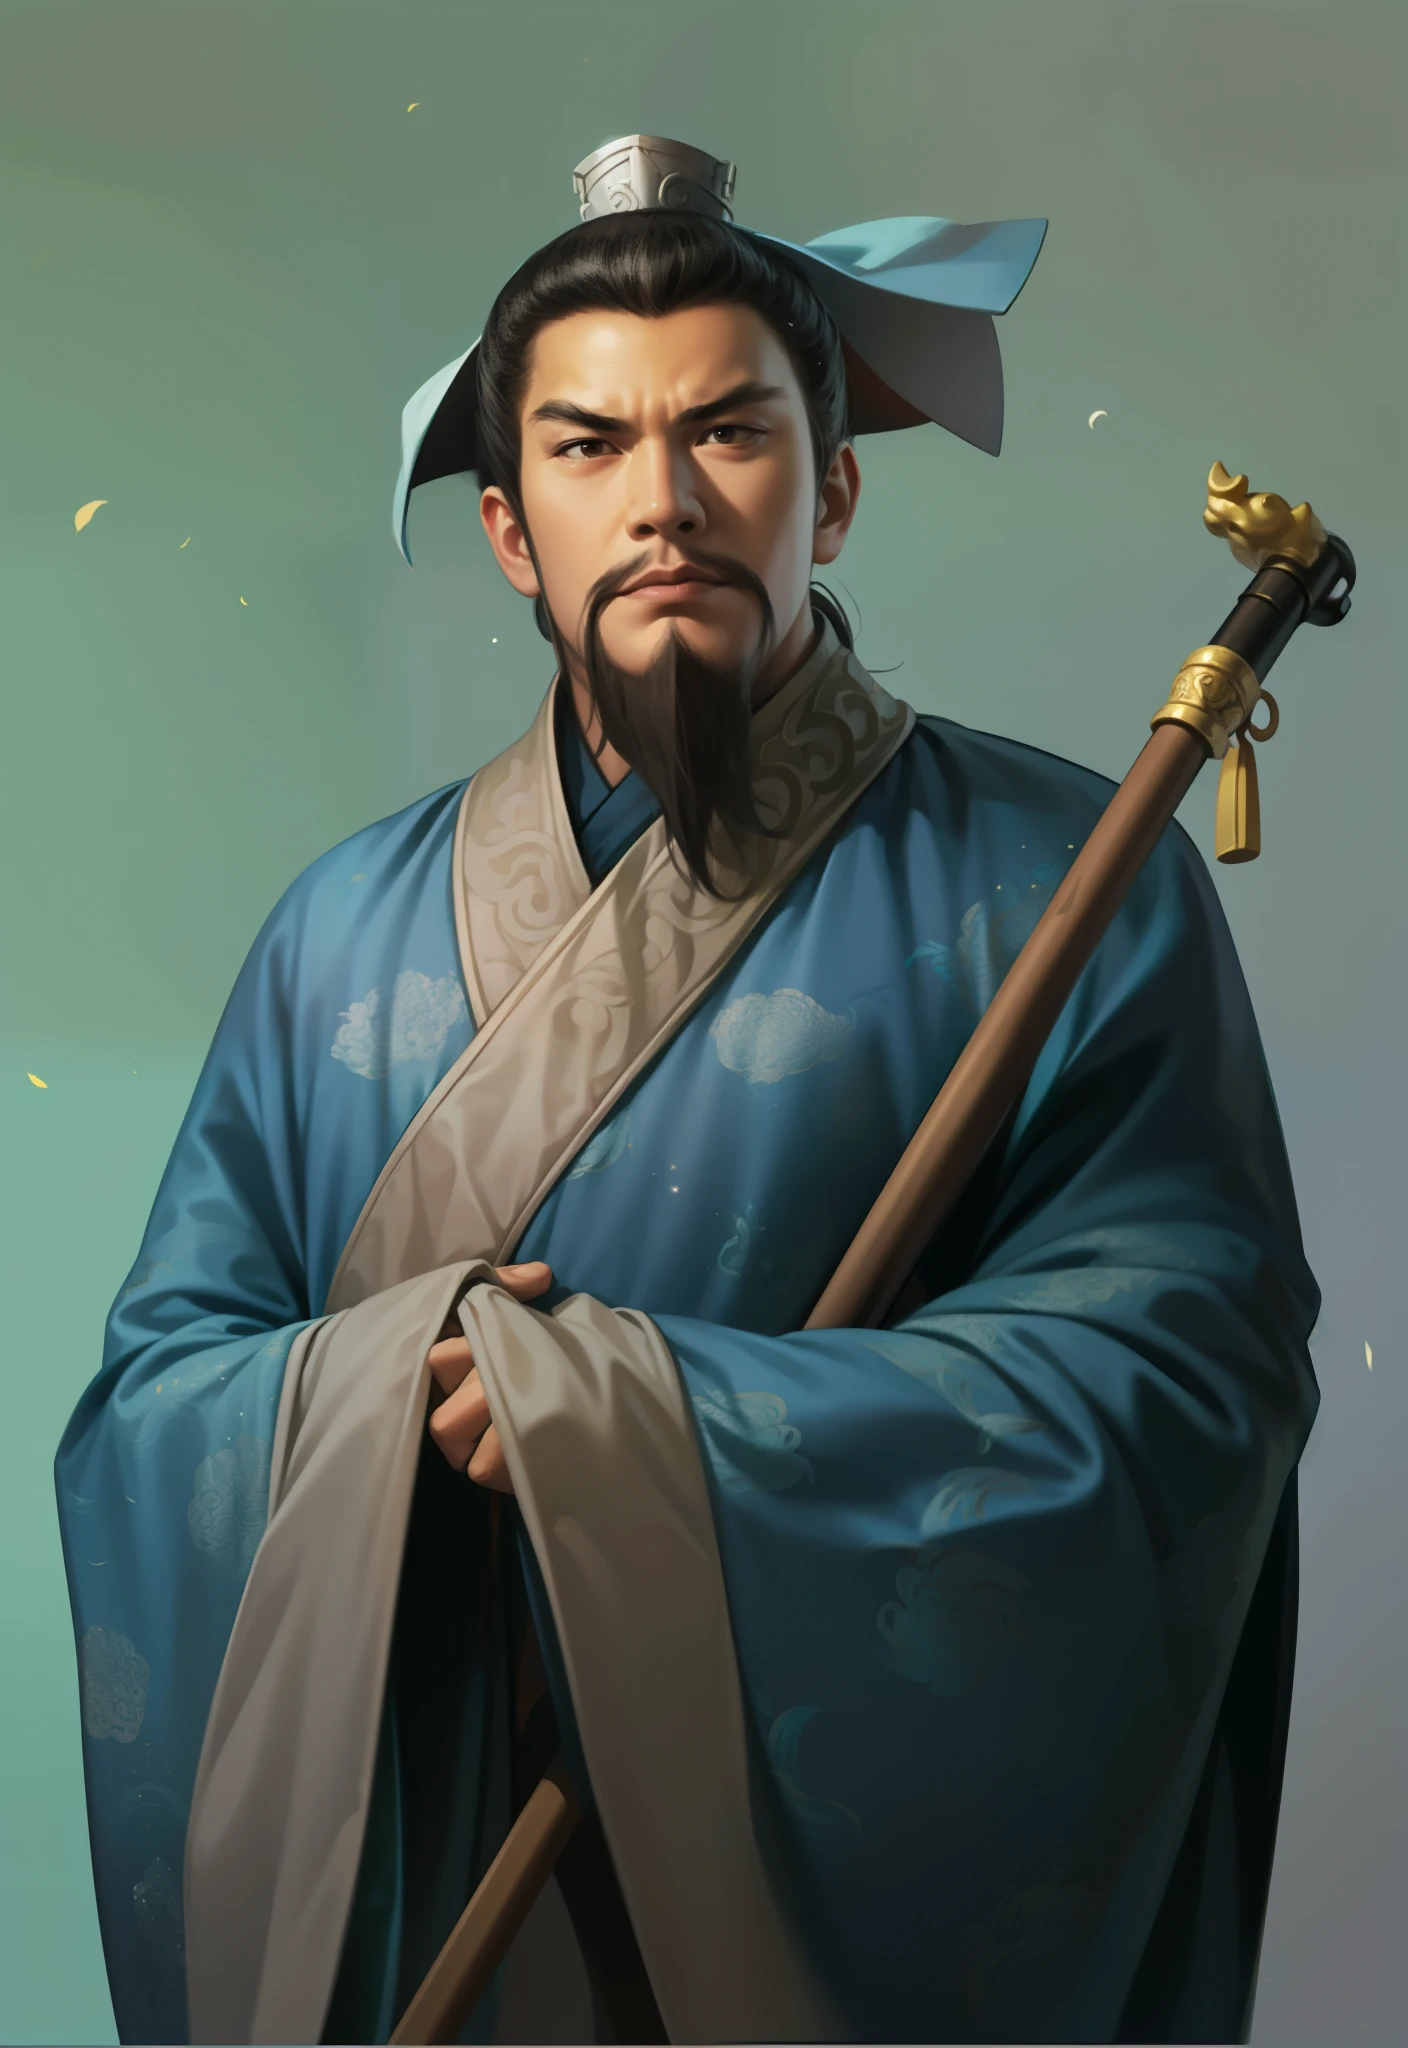 Mit Krücken bewaffnet、Nahaufnahme eines Mannes mit Hut, inspiriert von Wu Daozi, Inspiriert von Cao Zhibai, Inspiriert von Hu Zaobin, inspiriert von Kaiser Xuande, inspiriert von Dong Yuan, inspiriert von Wu Bin, inspiriert von Wu Zuoren, Zhang Daqian, inspiriert von Cheng Zhengkui, taoistischer Priester